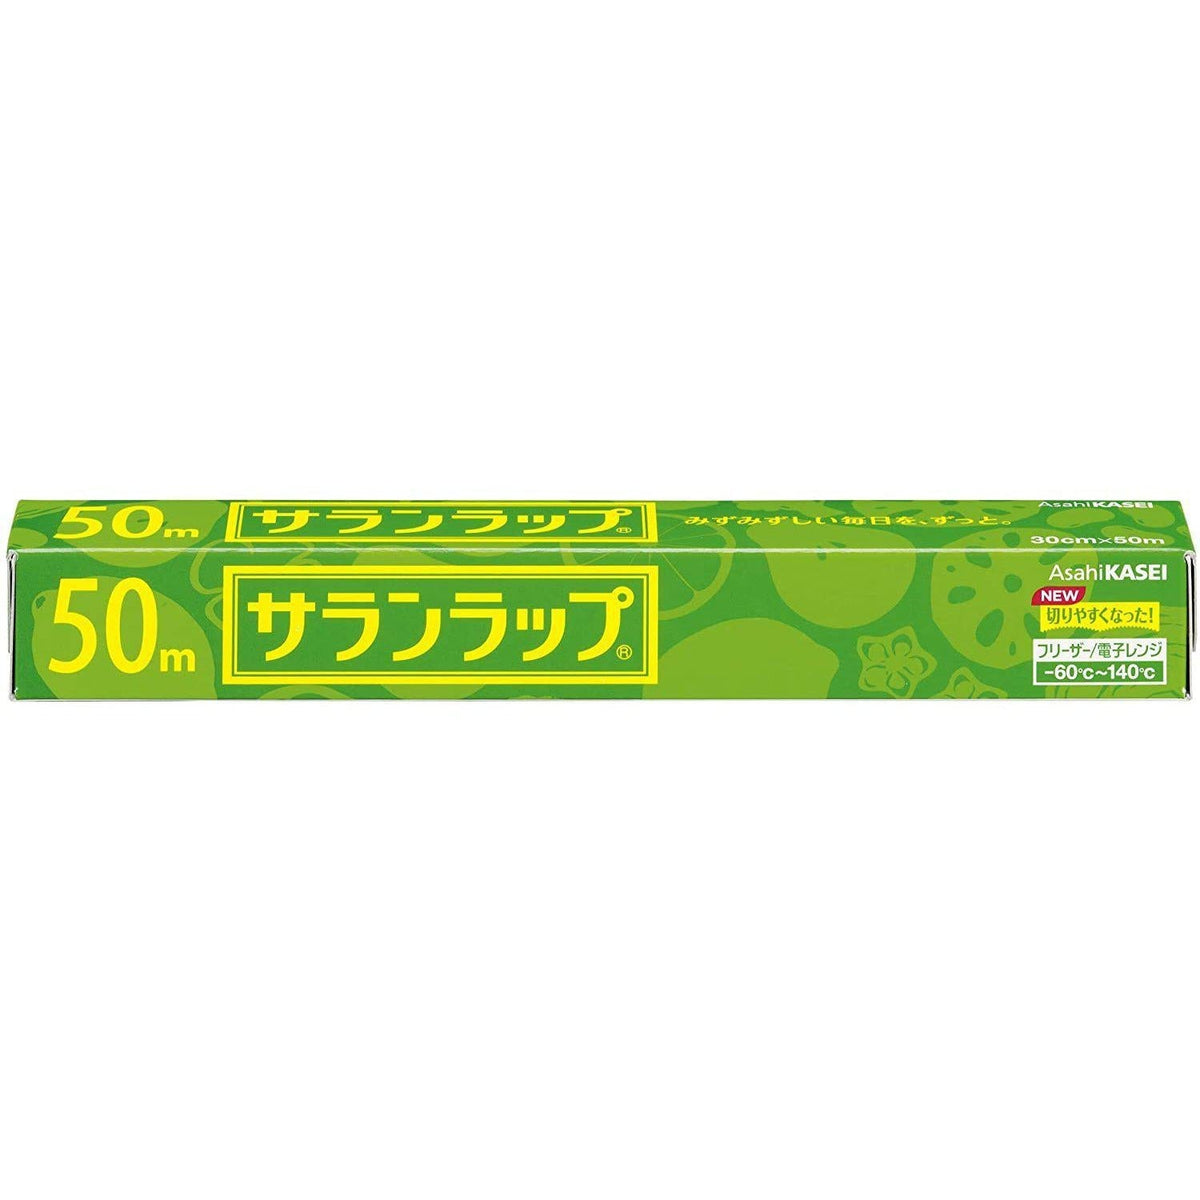 Asahi Kasei Saran Wrap Japanese Plastic Wrap 30cm x 50m – Japanese